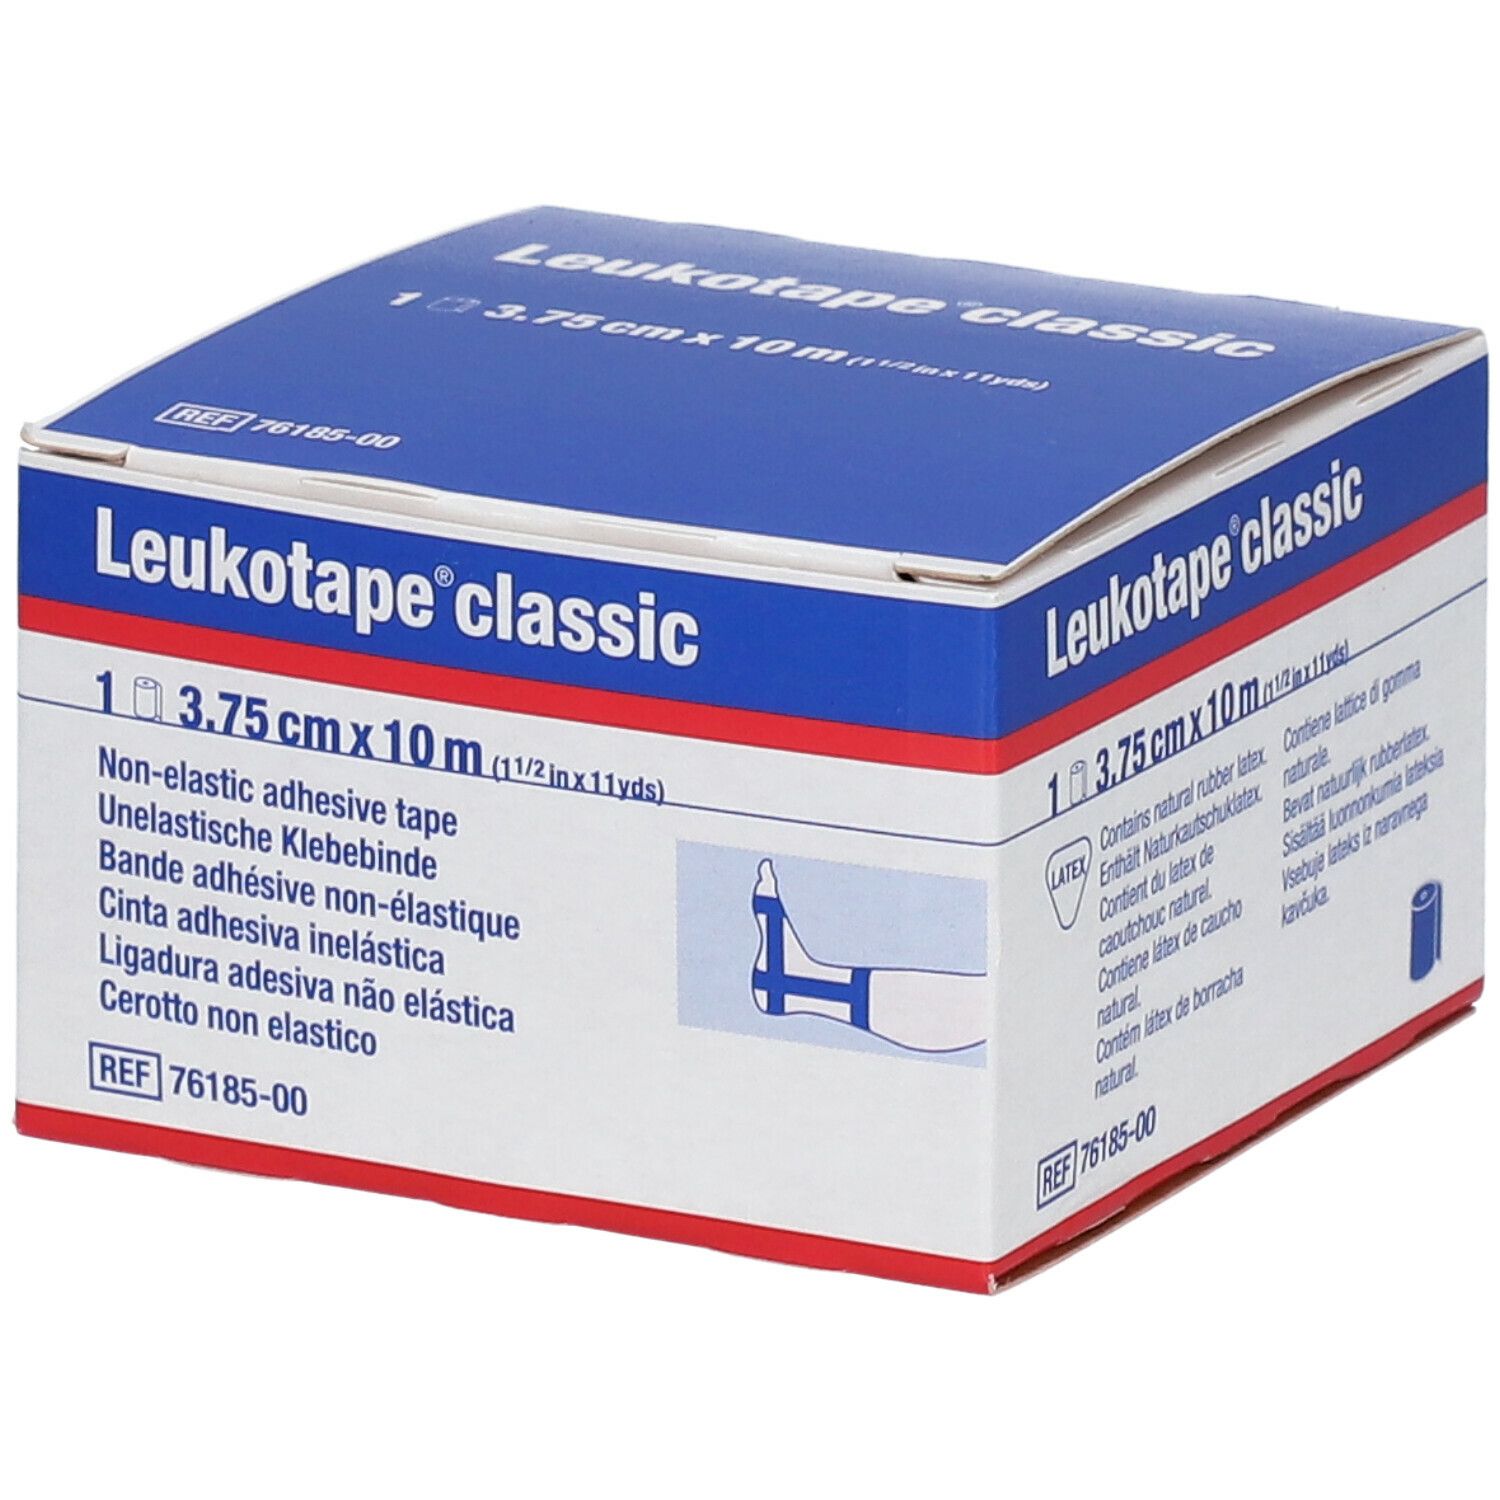 Leukotape® Classic 3,75 cm x 10 m blau